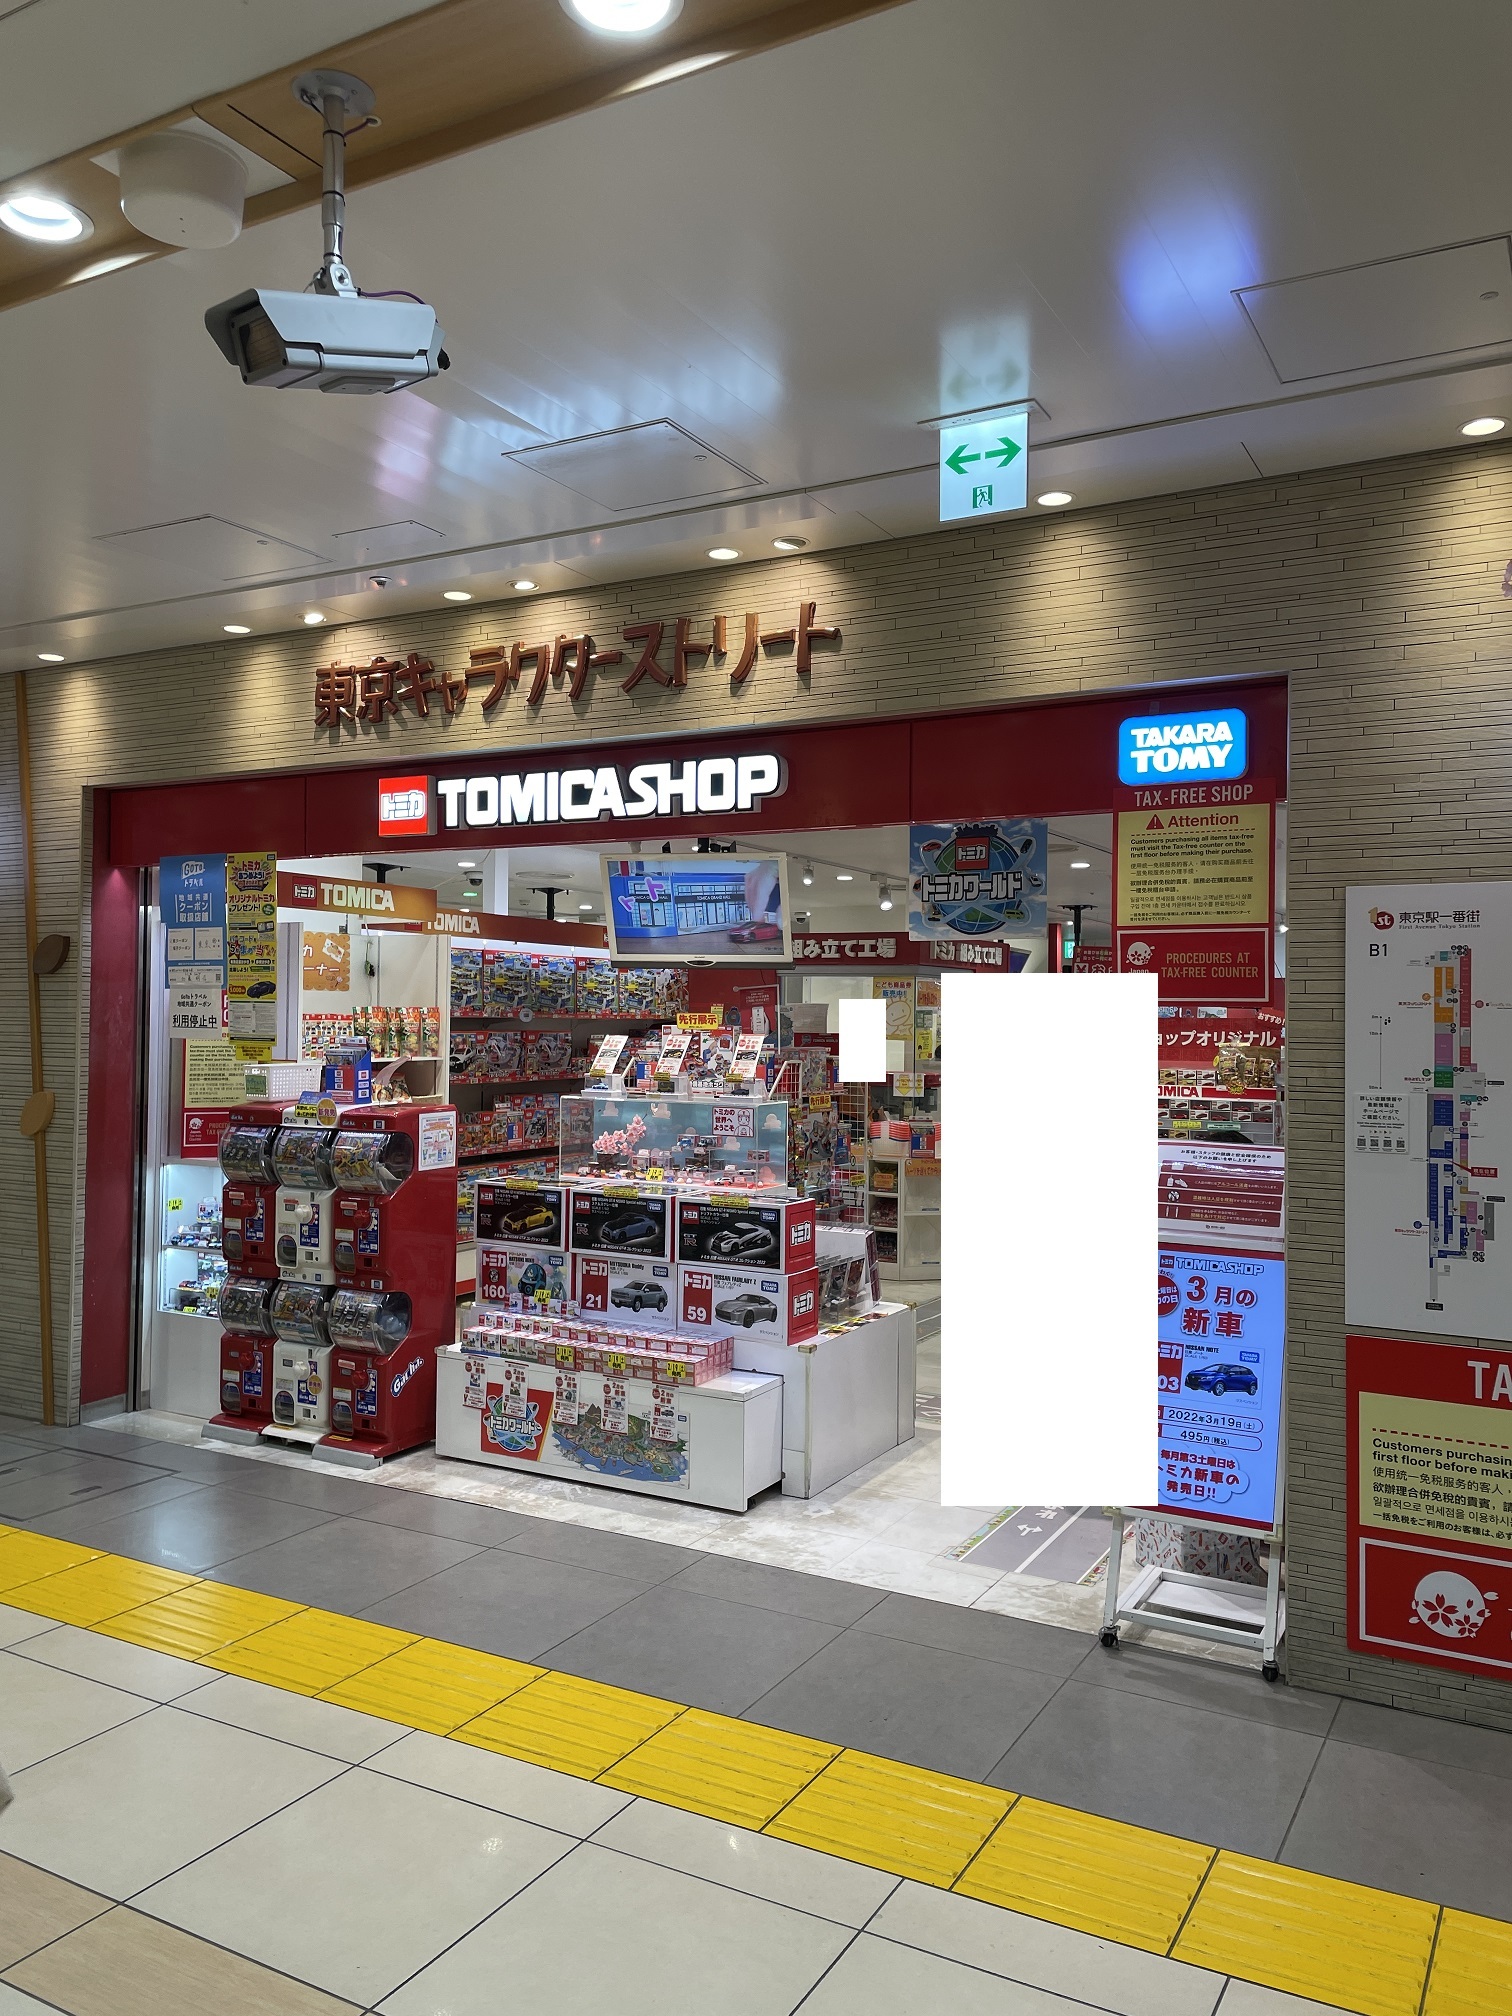 店舗状況】トミカショップ東京店 タカラトミーモール限定トミカ